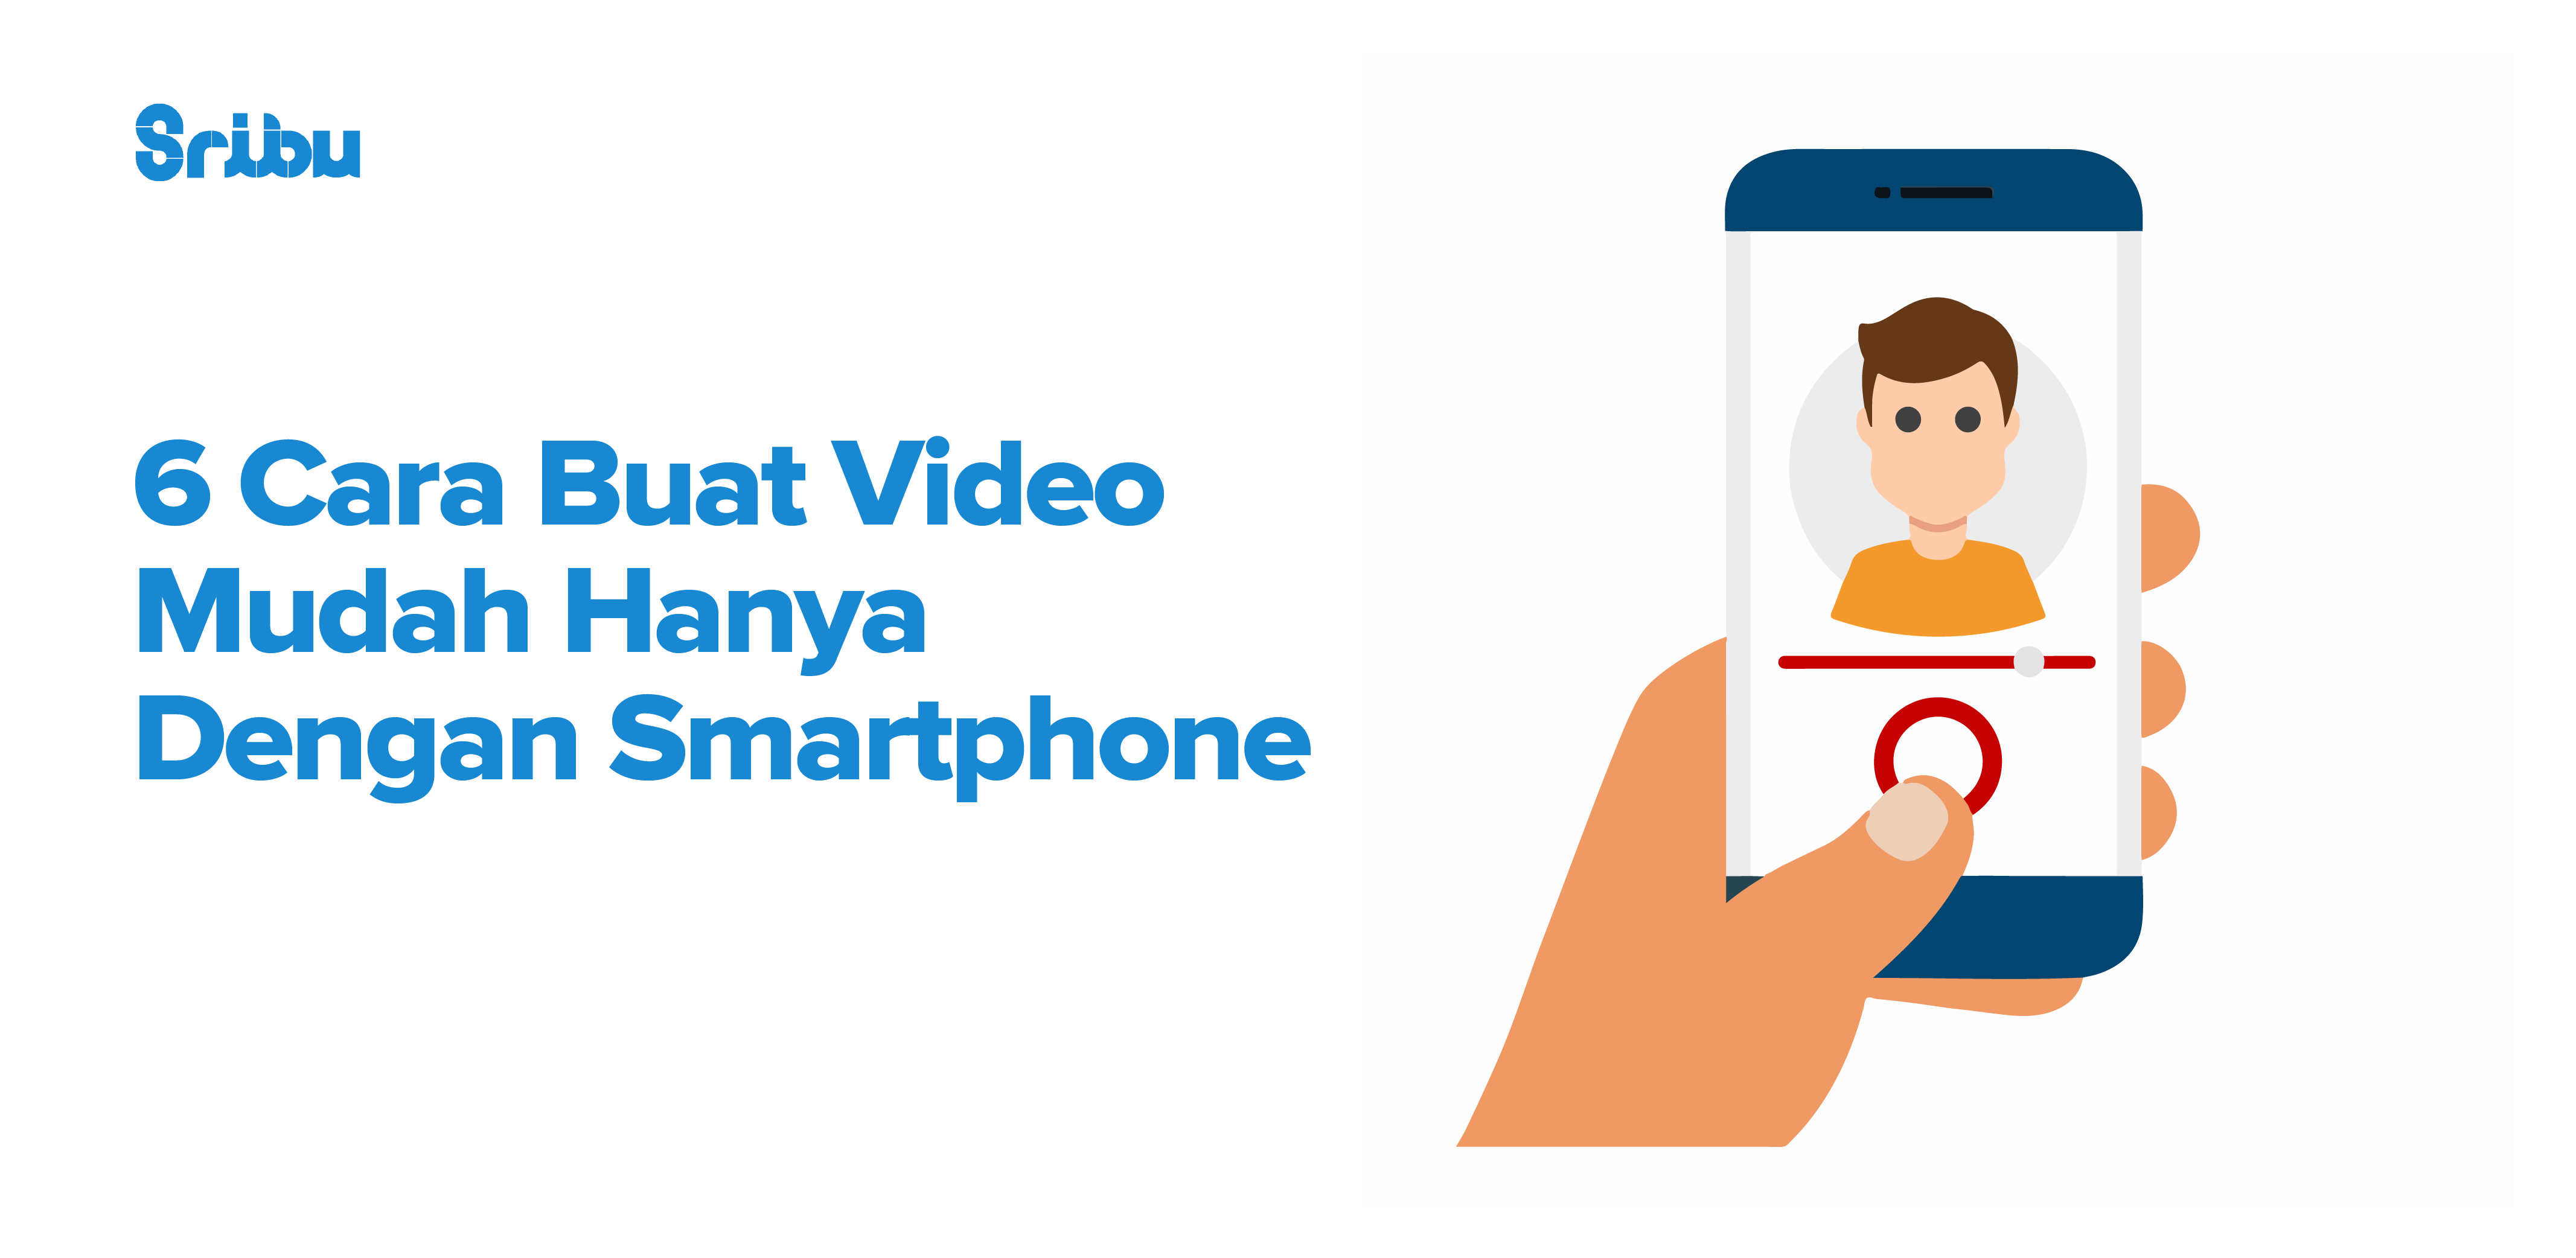 6 Cara Buat Video Mudah Hanya Dengan Smartphone